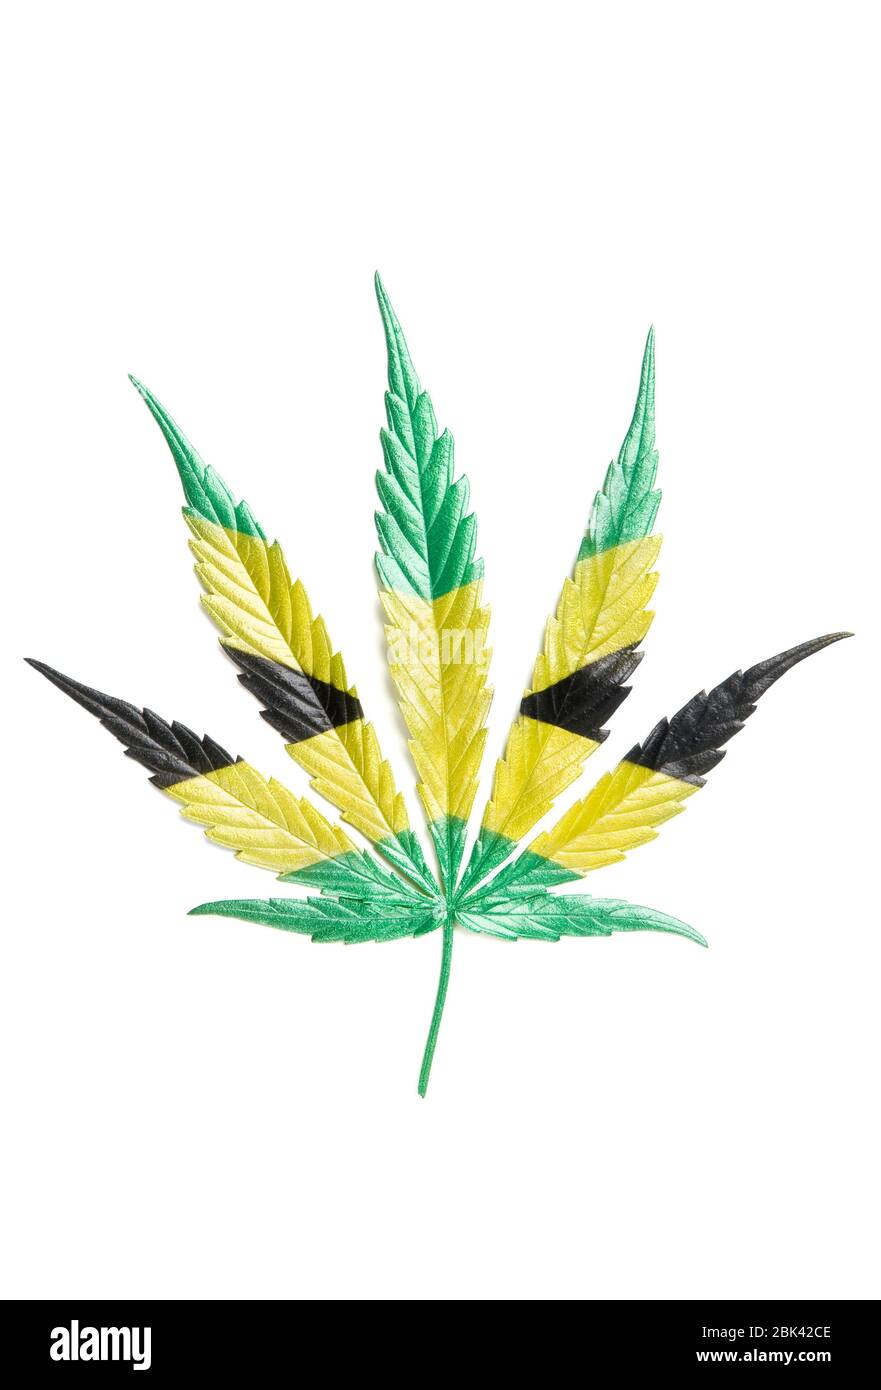 Jamaicano Hoja de color a mano de cáñamo de cultivo completo - cannabis - aislado sobre fondo blanco con sombra. Cultivo de marihuana medicinal. Disparo de estudio Foto de stock